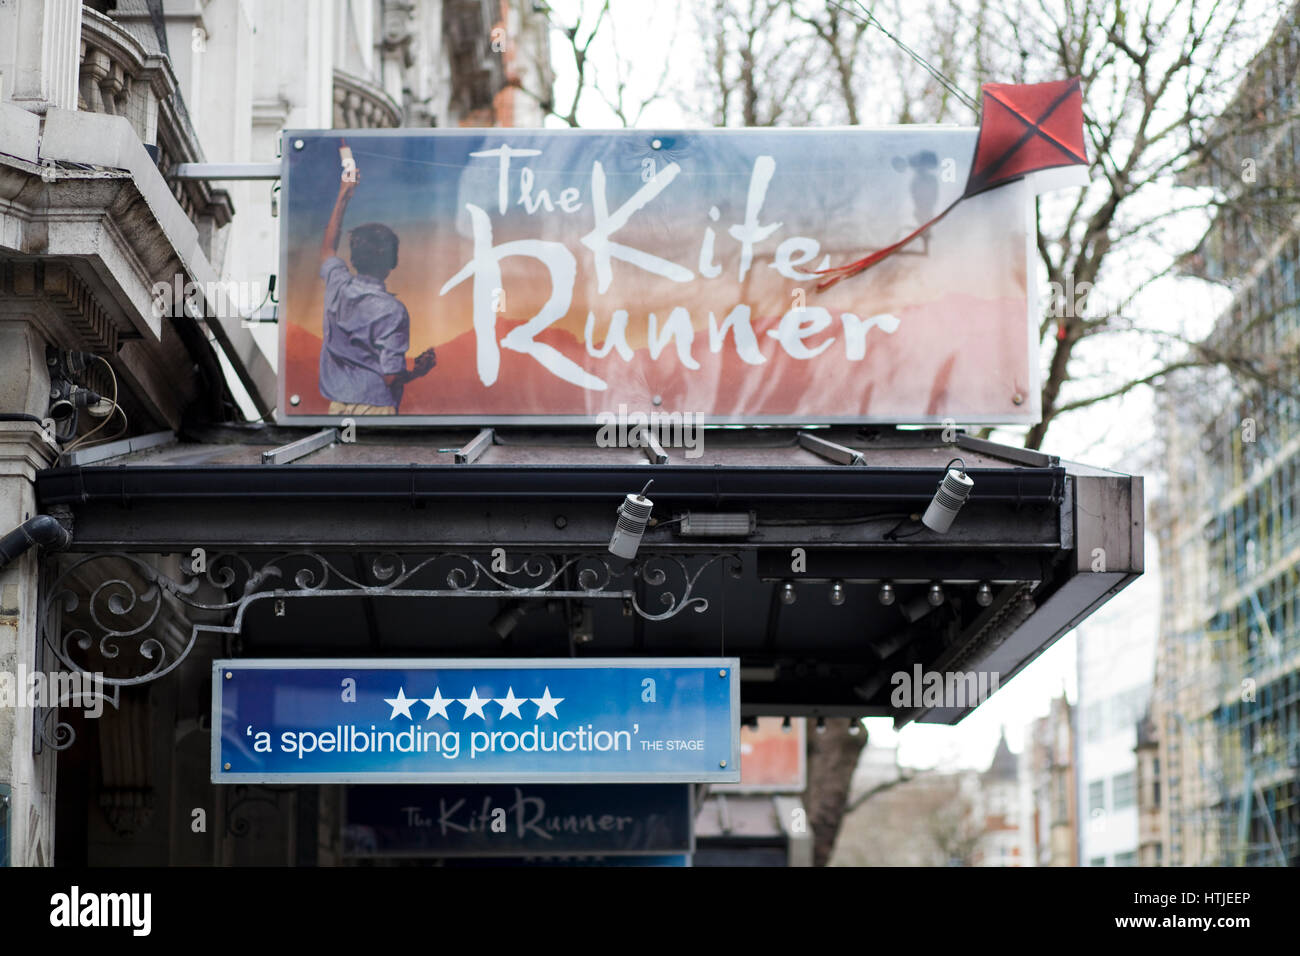 Las vallas publicitarias de teatro The Kite Runner Foto de stock